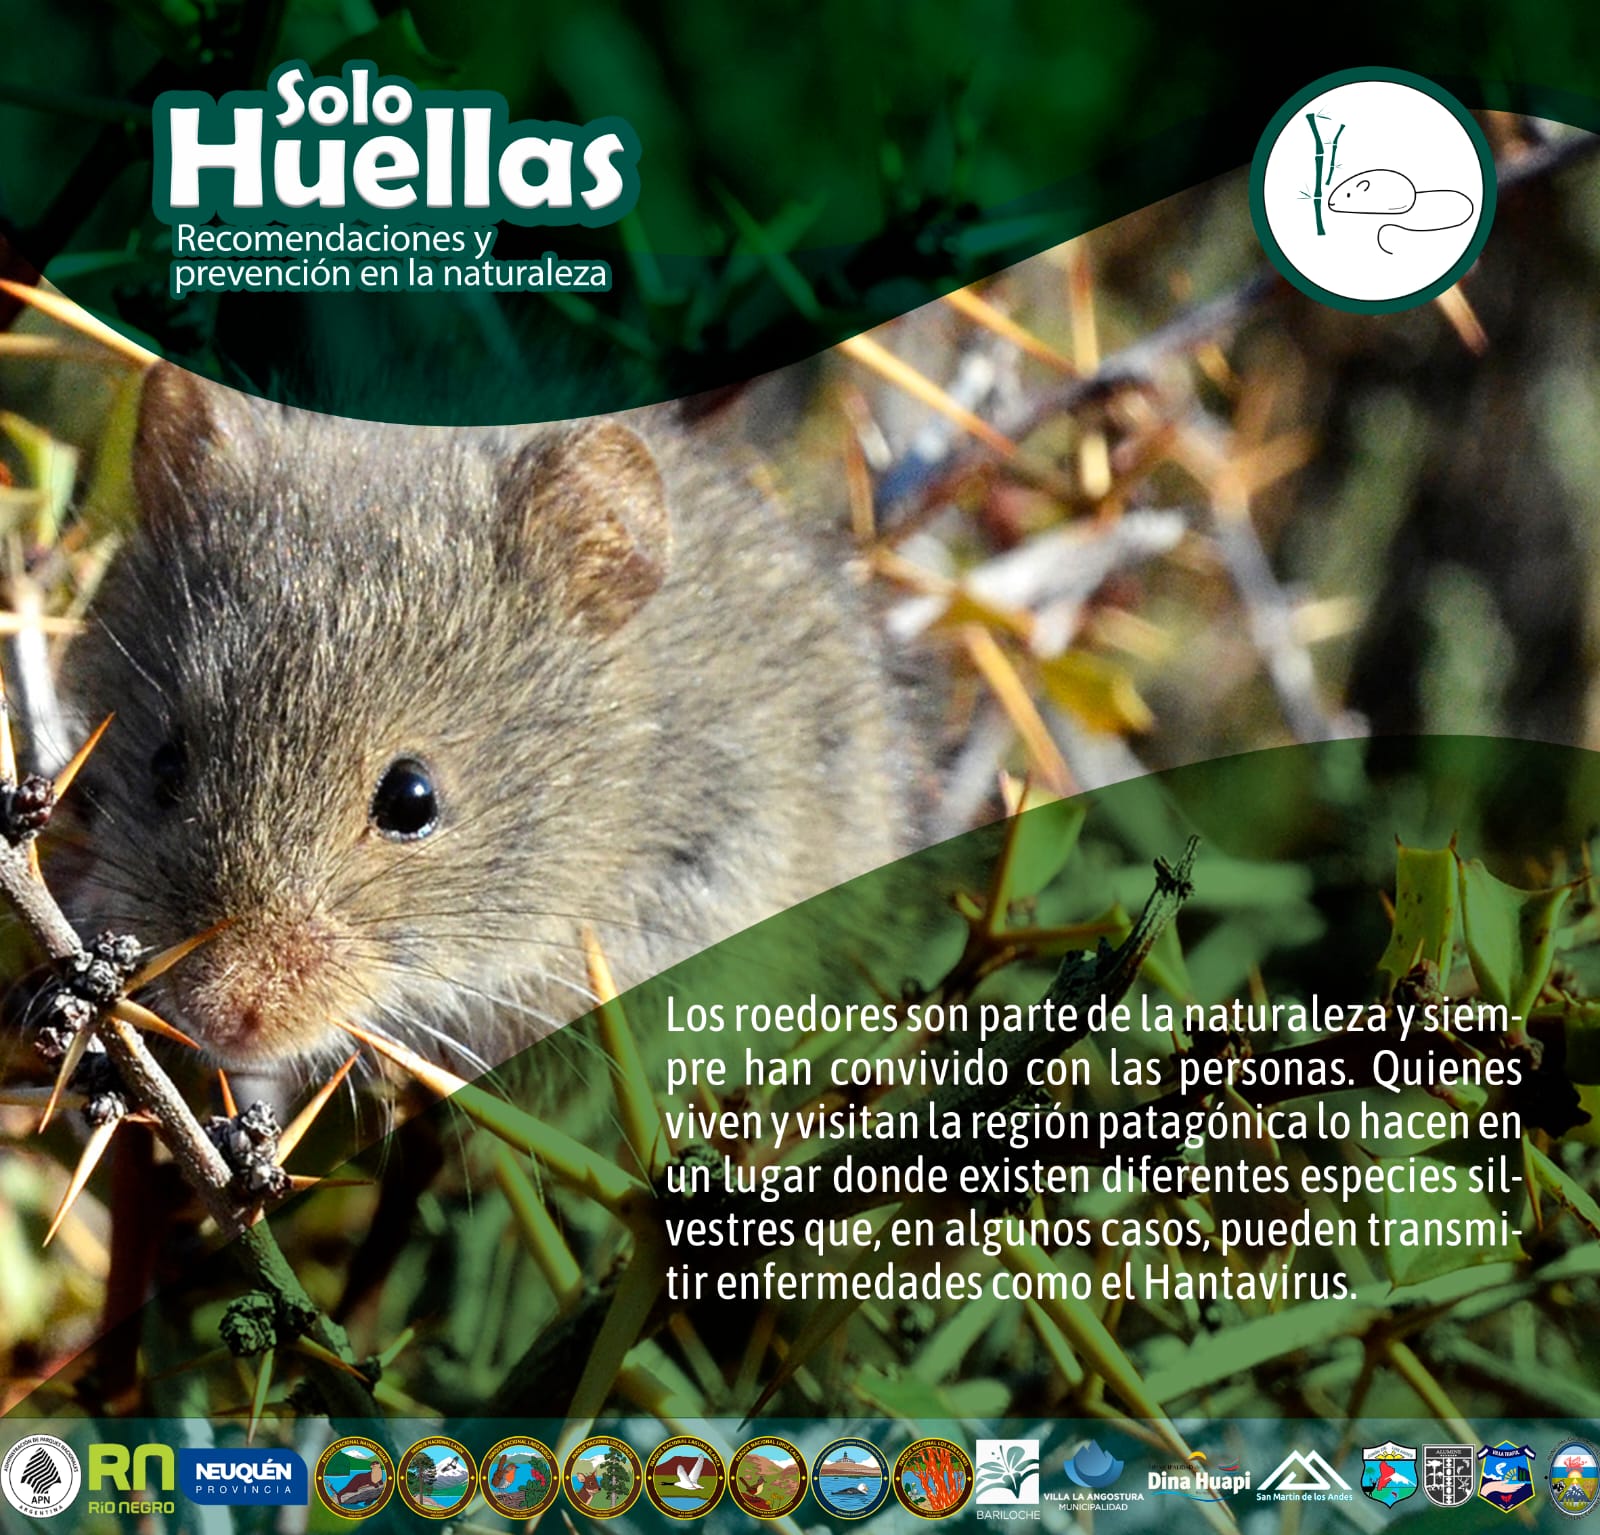 “Solo Huellas. Recomendaciones y cuidados en la naturaleza”: Hantavirus, prevenir enfermedades trasmitidas por roedores